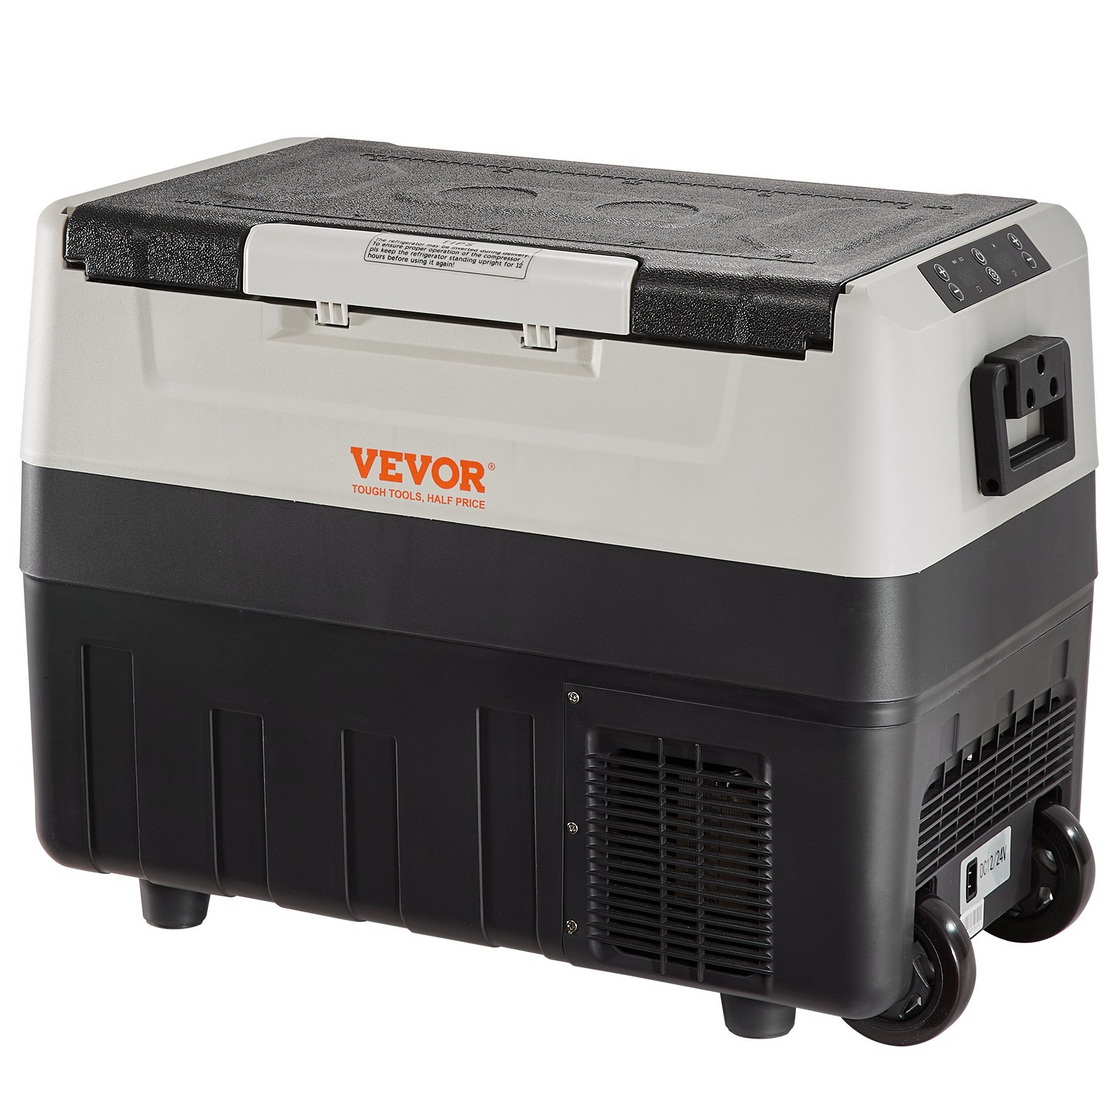 VEVOR Car Refrigerator Fridge - Dual Zone Portable Freezer for Outdoor, Camping, Travel, RV